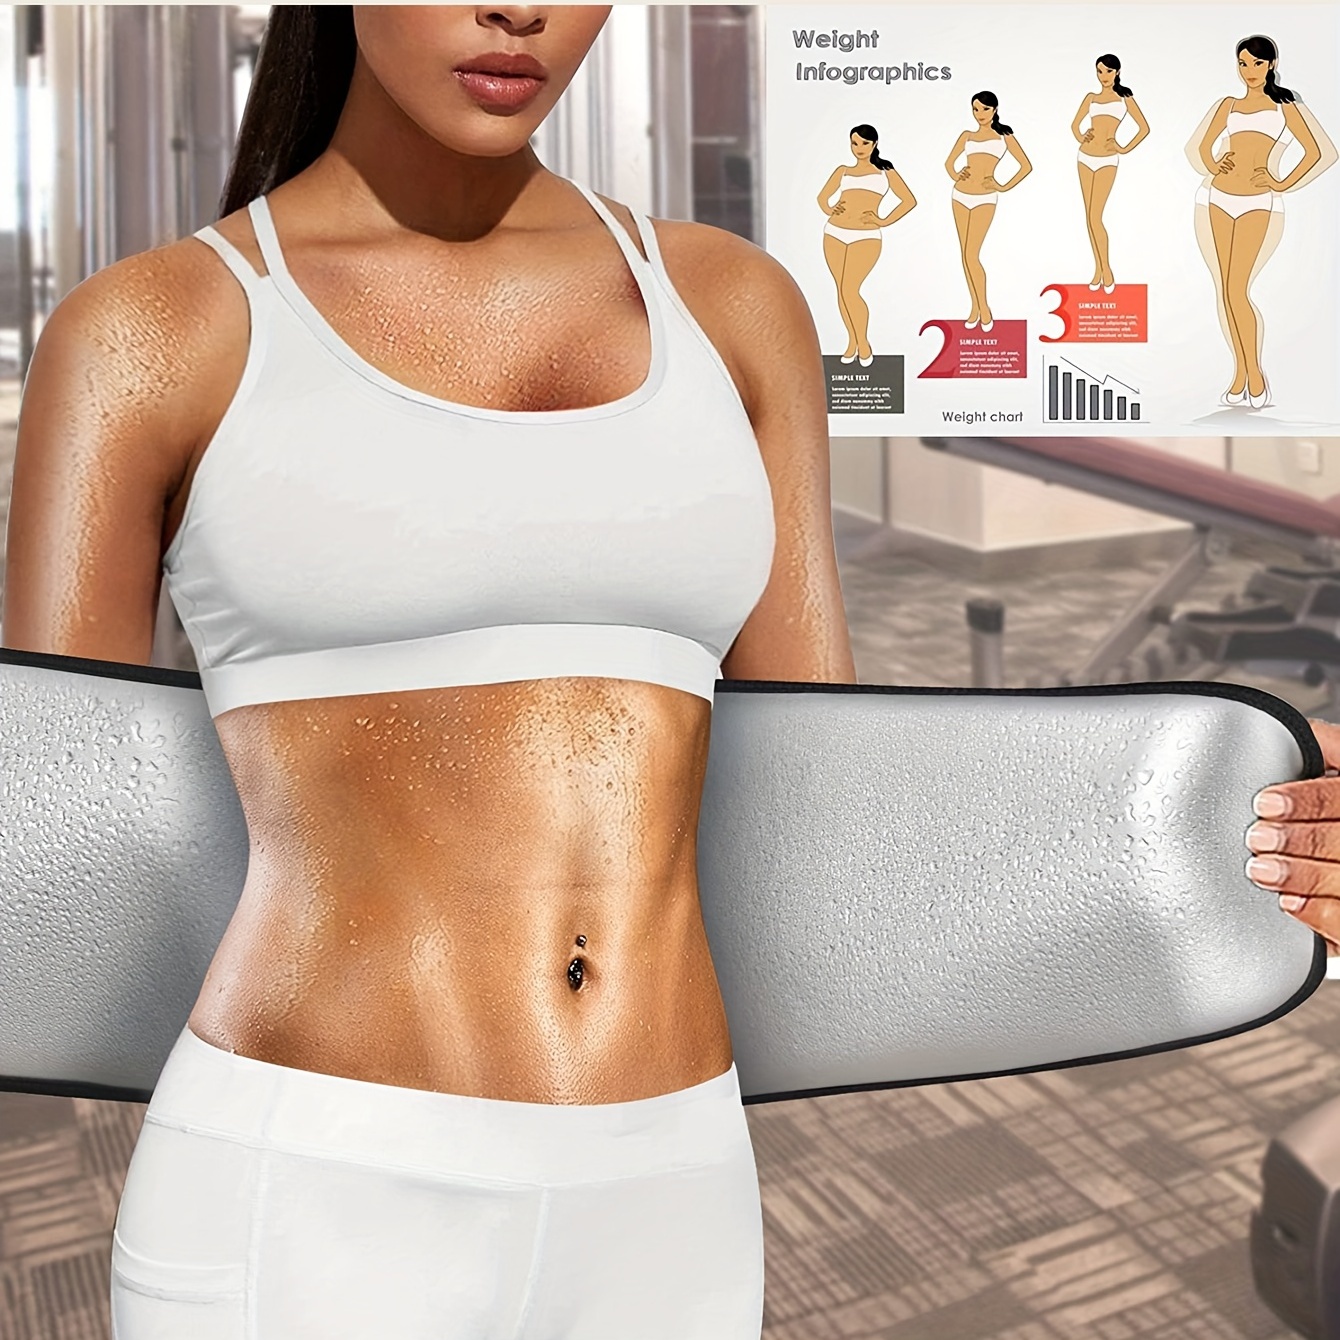 Women's Waist Trimmer Belt Sweat Band Lower Belly Fat Weight